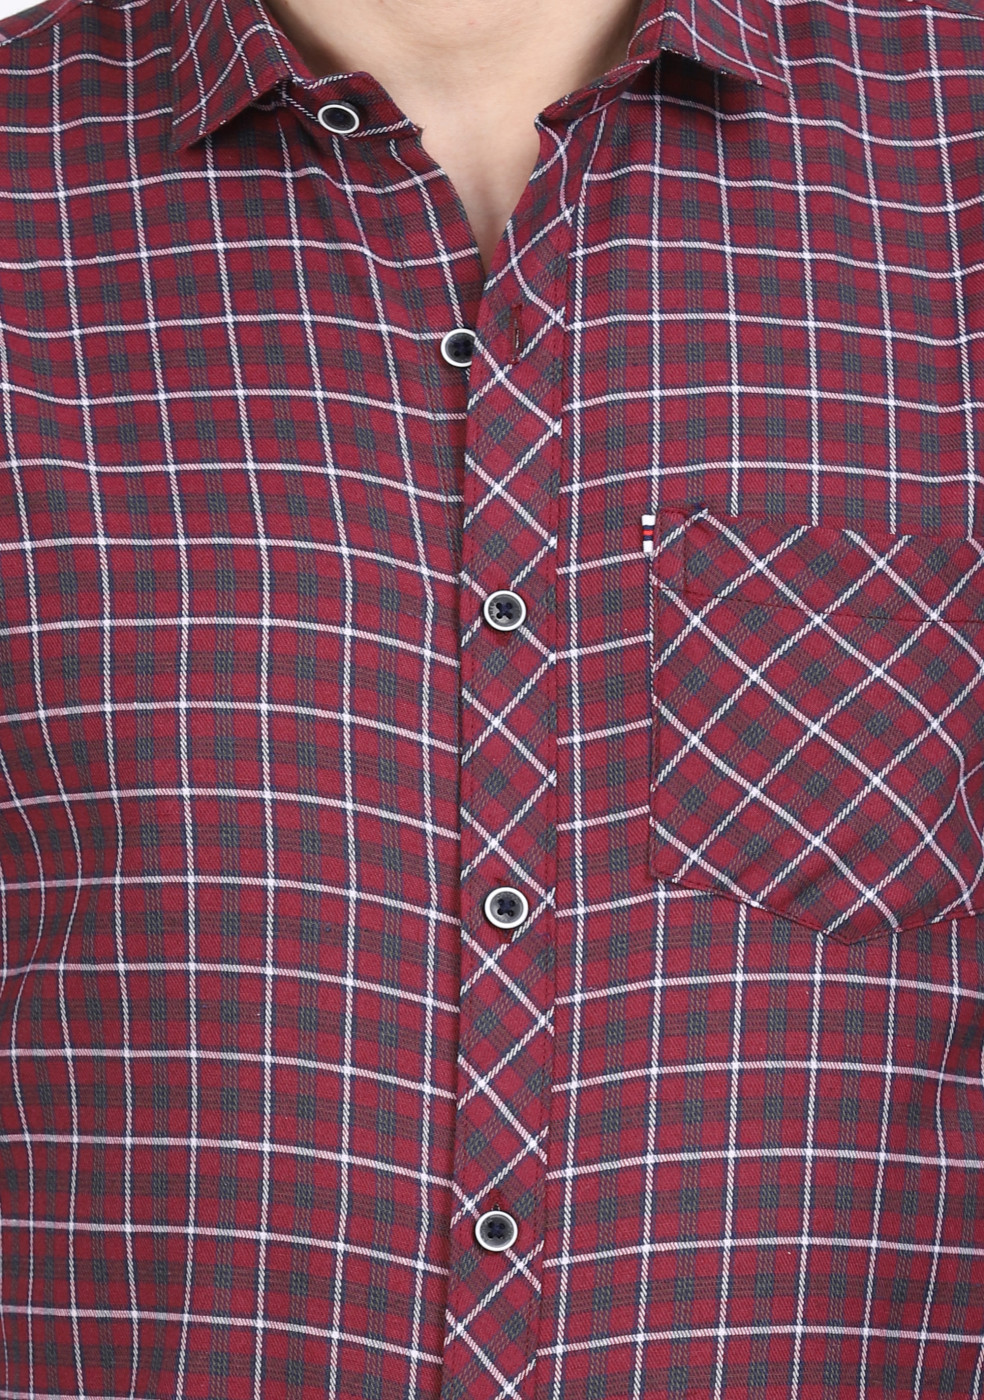 ASHTOM Red White Regular Fit Shirt For Men